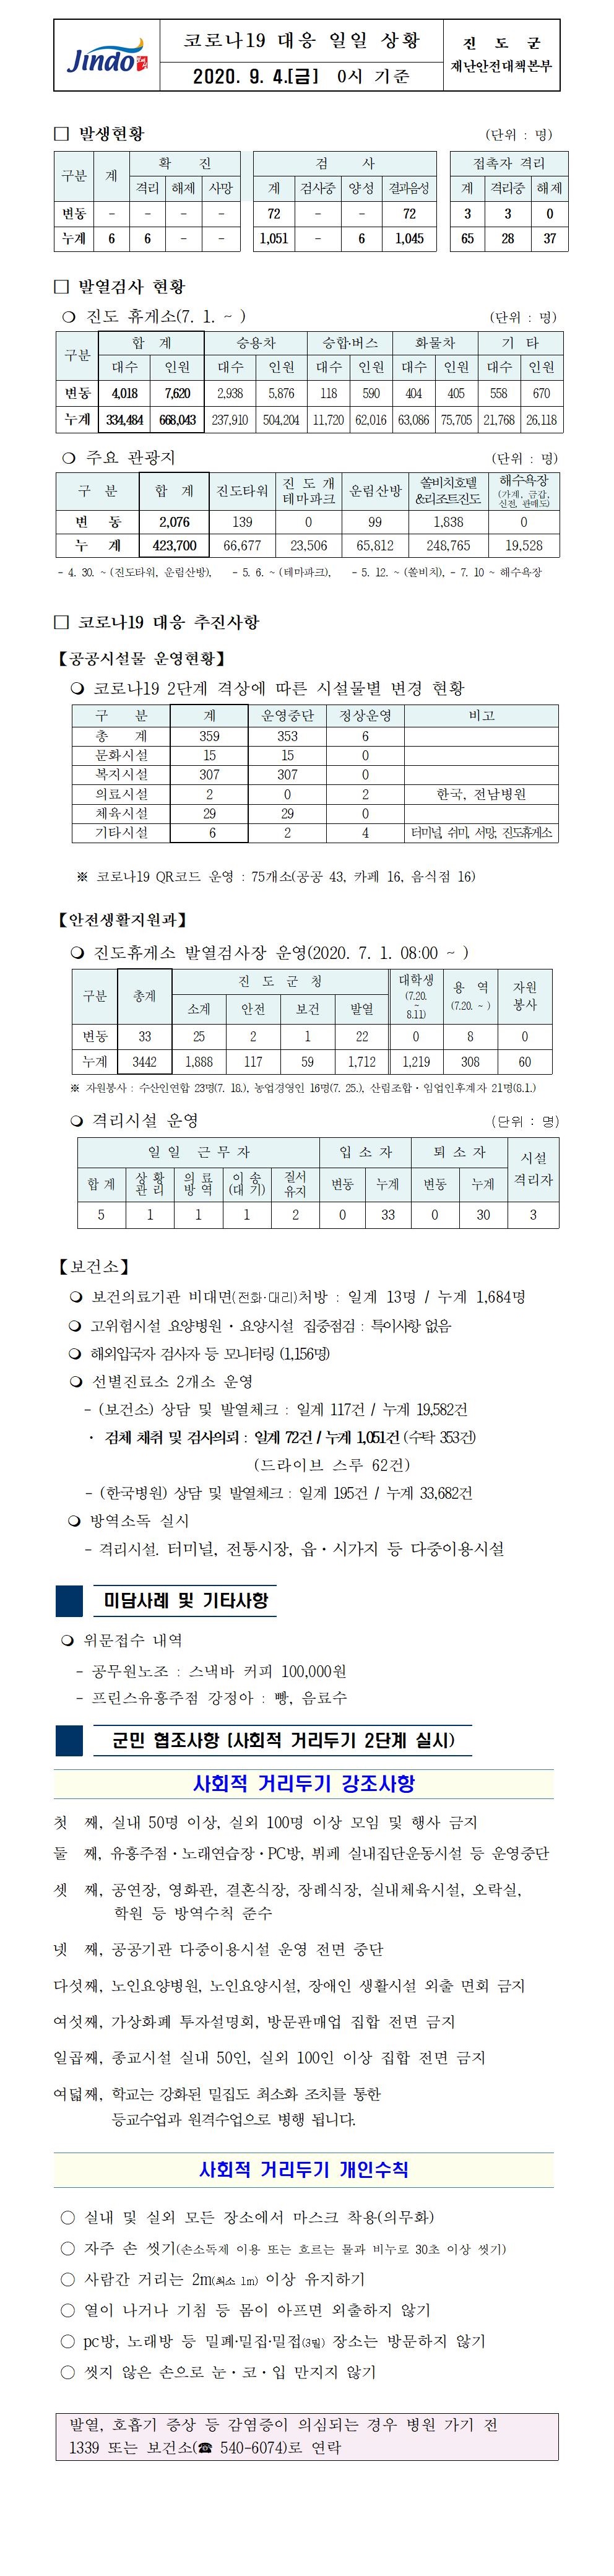 코로나19대응 일일 상황 보고(9월4일 0시 기준) 첨부#1